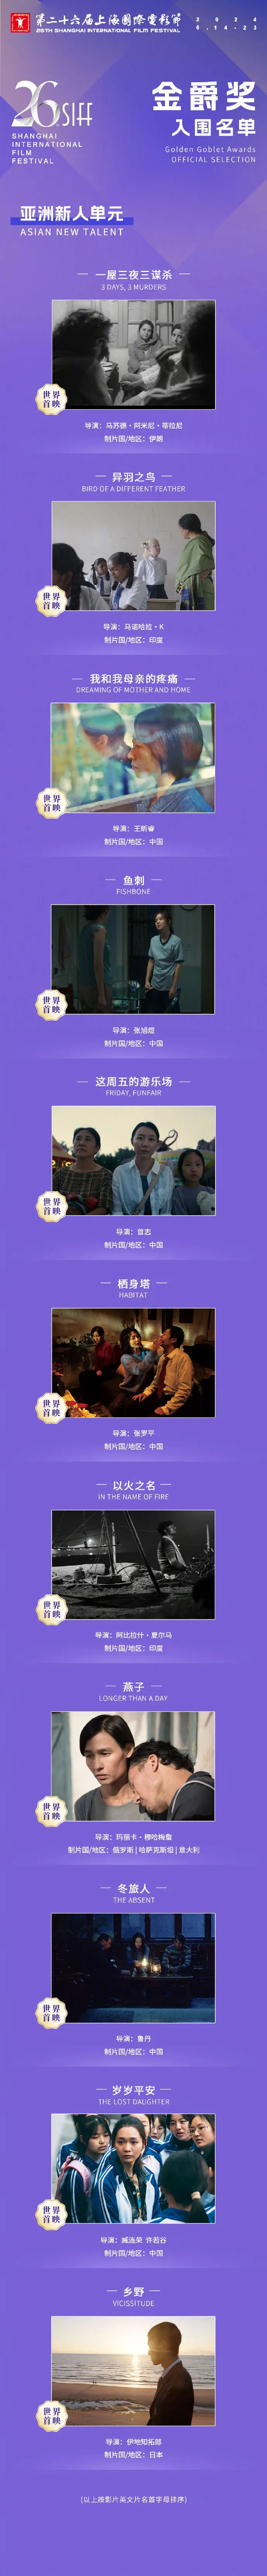 第二十六届上海国际电影节金爵奖入围名单公布  第3张